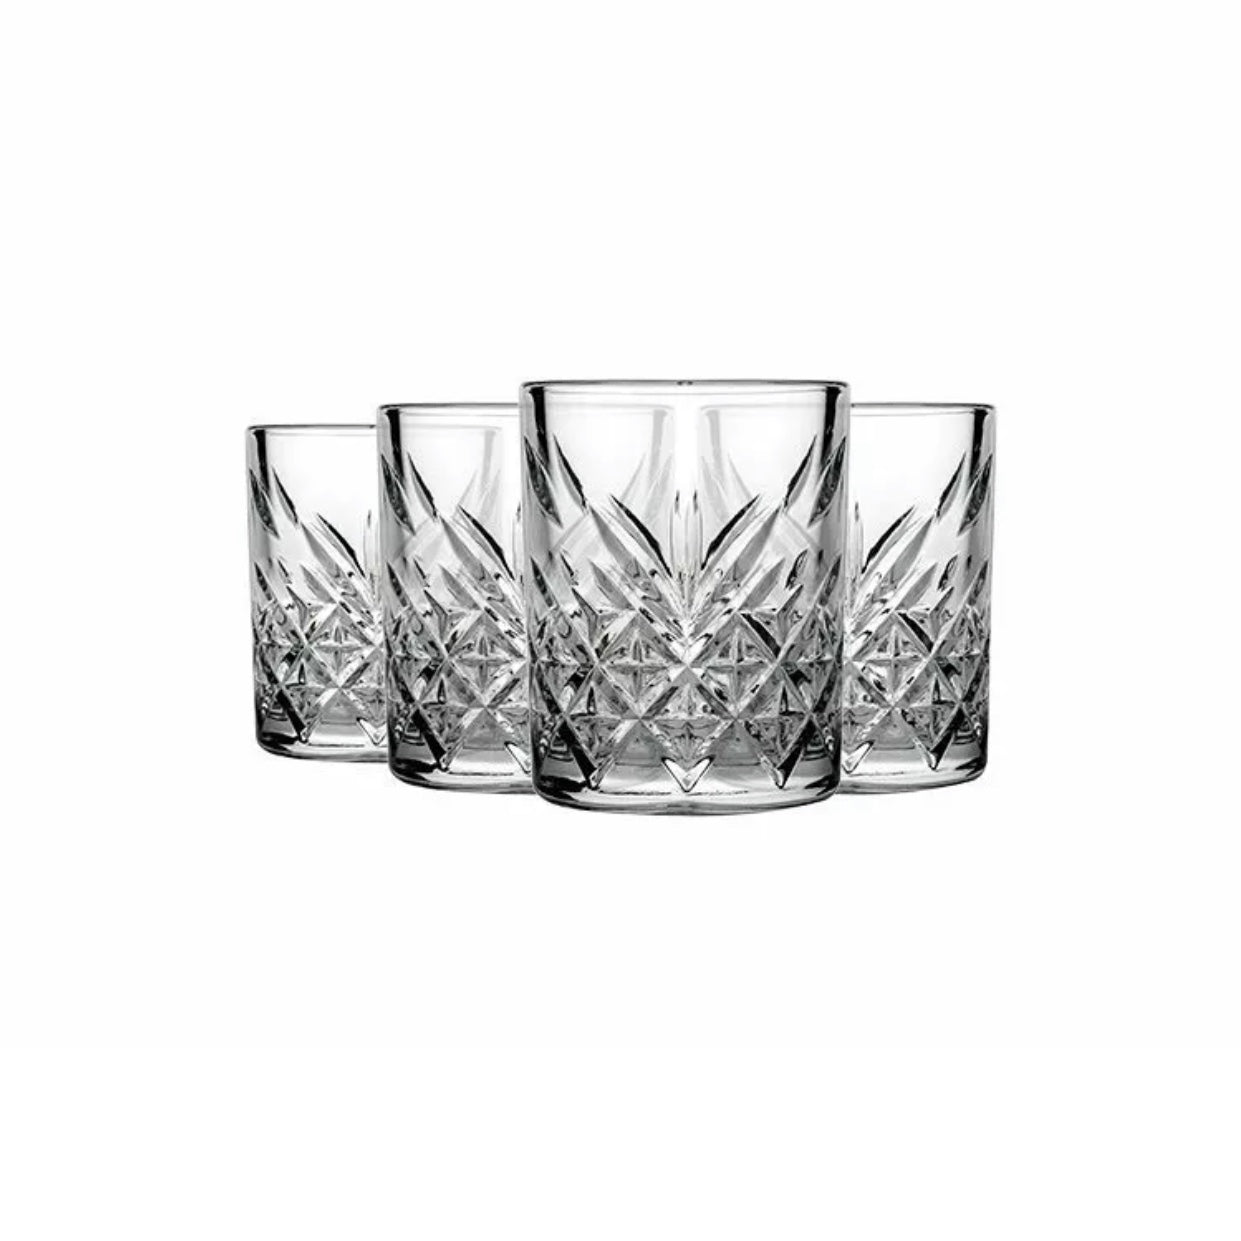 Trinkgläser Timeless Kristall-Design 4 x 345ml kurz -  von Tanay - Nur €11.90! Bestelle jetzt Kikis Kitchen